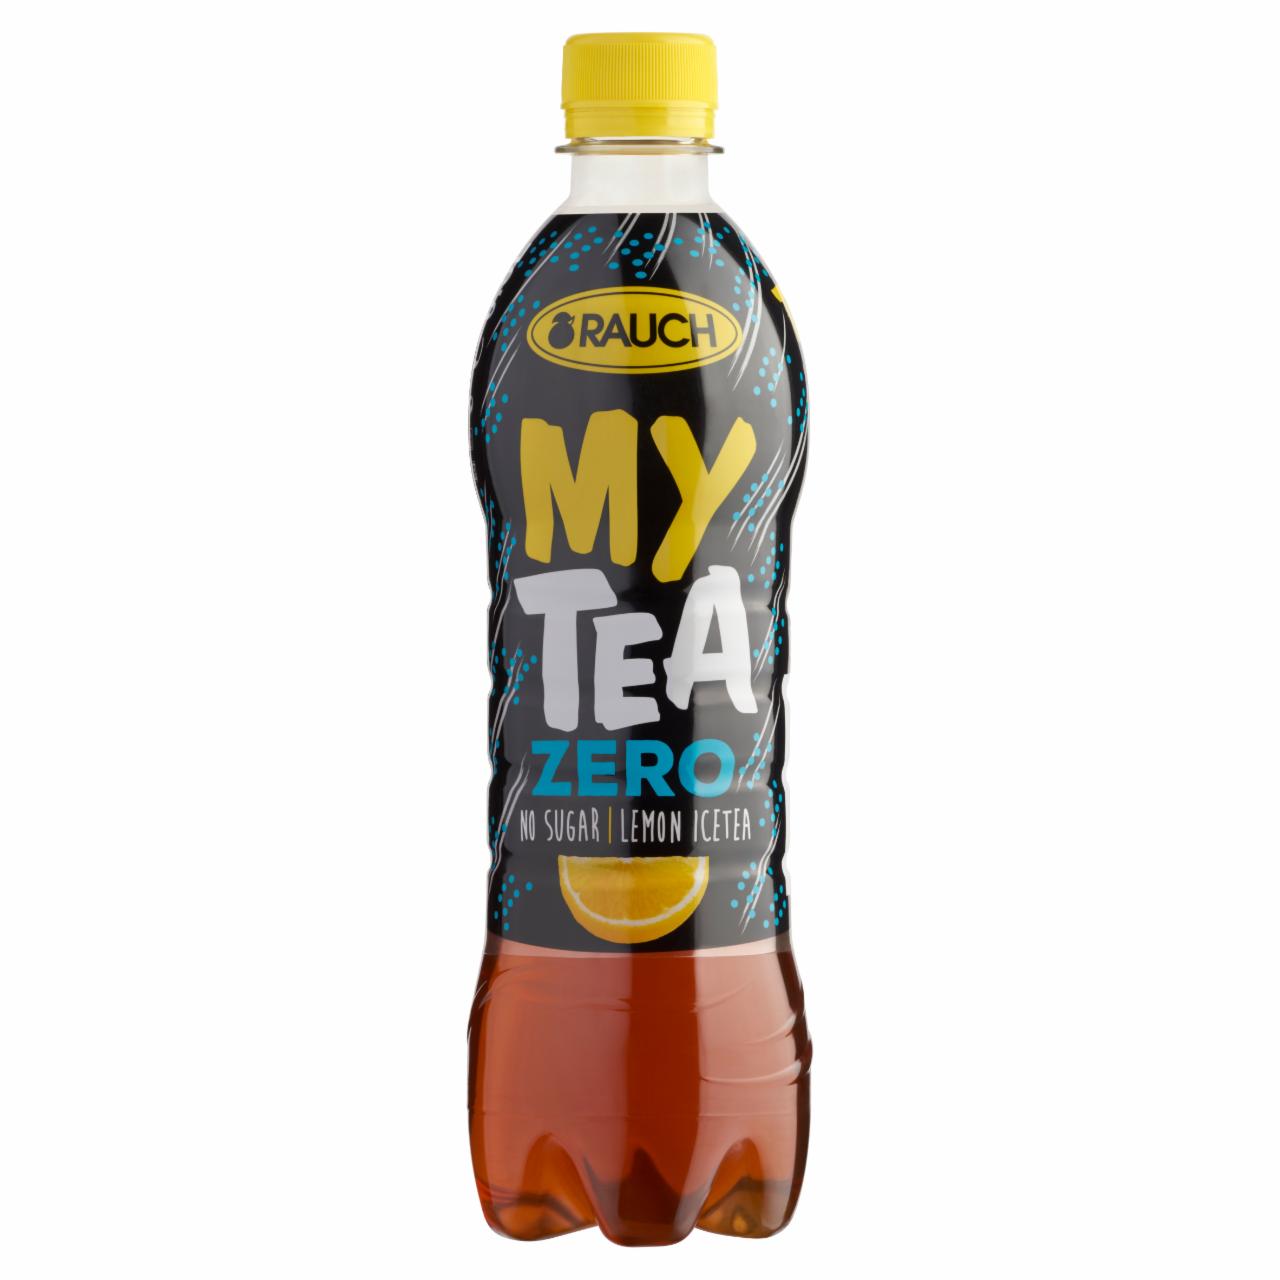 Képek - Rauch My Tea Zero cukormentes ice tea citromos üdítőital fekete teából, édesítőszerekkel 0,5 l